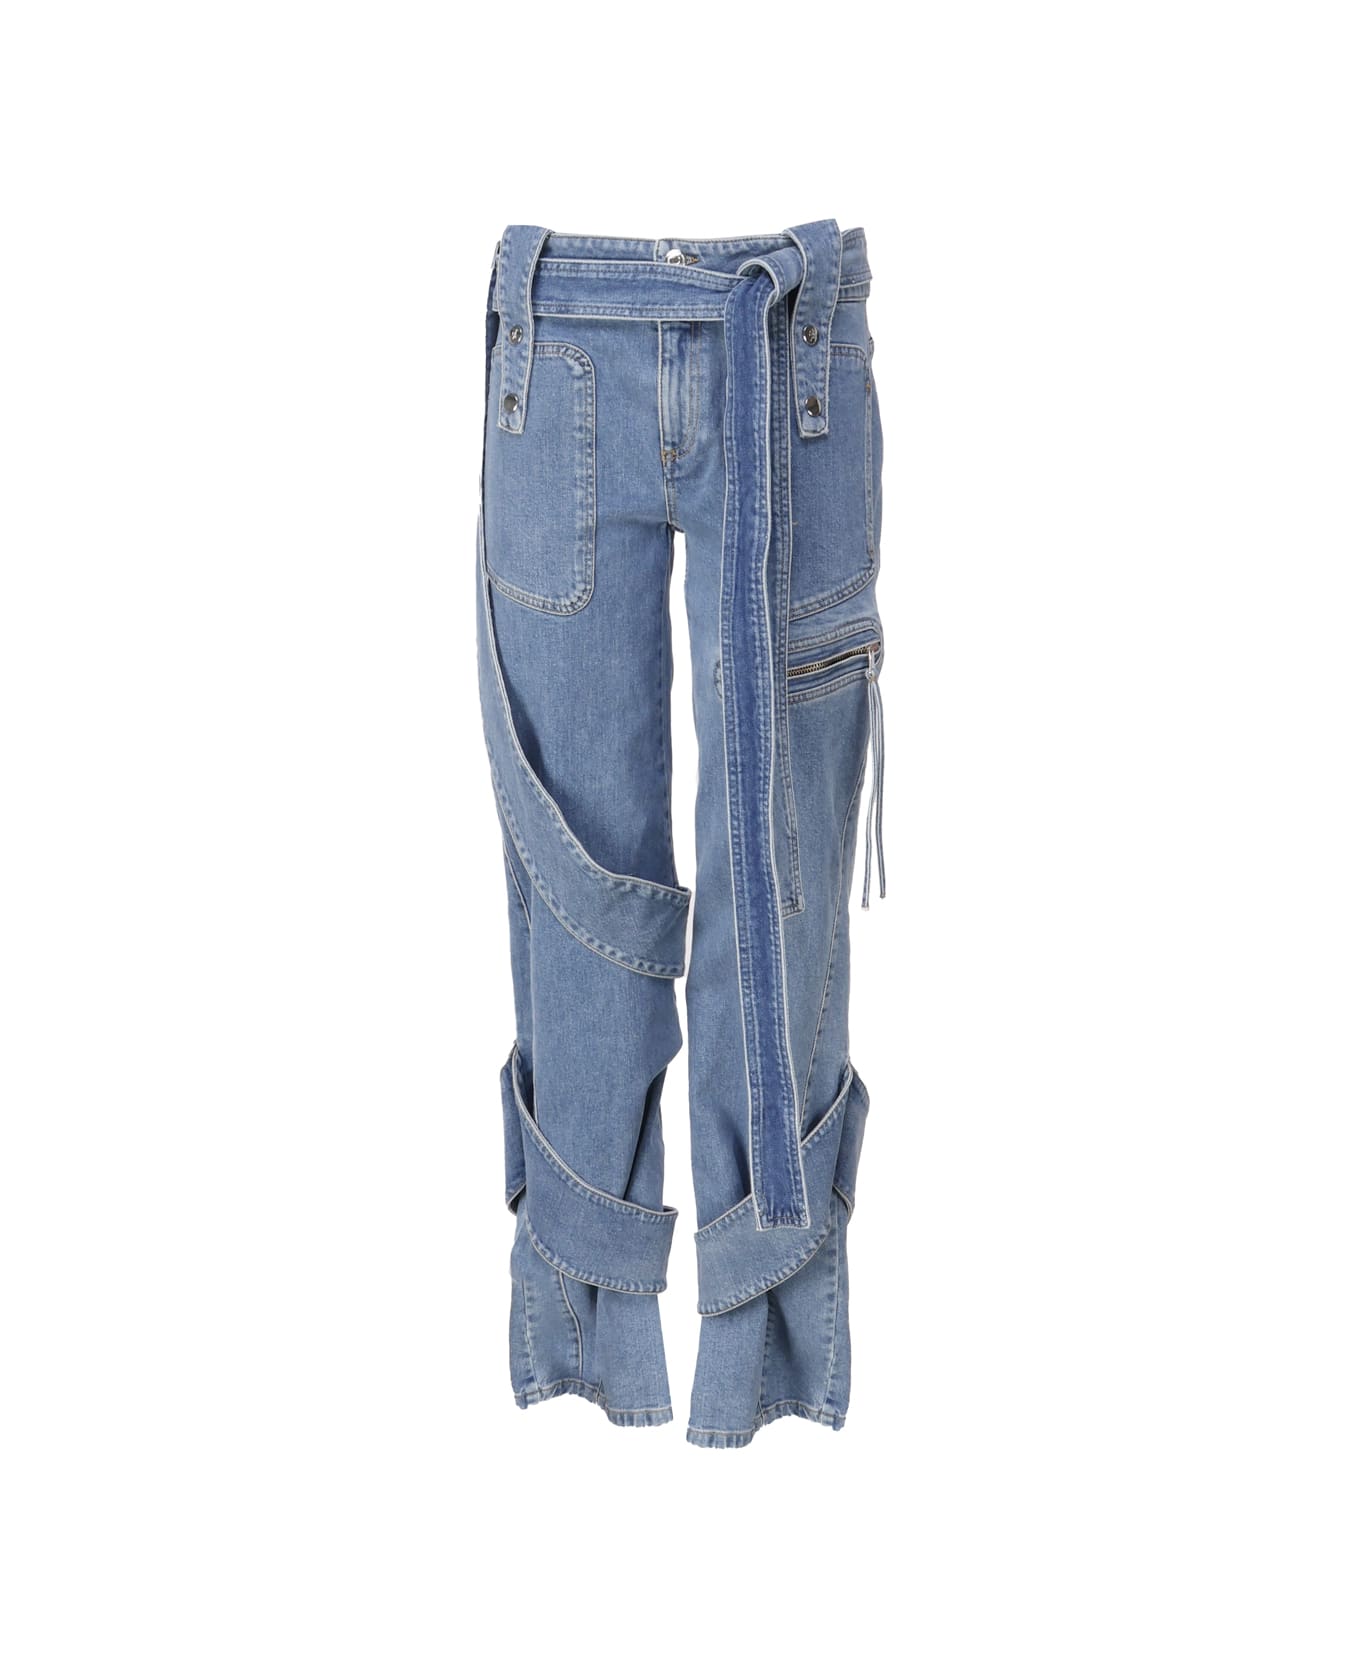 Blumarine Cargo Jeasn With Belt - Medium wash jeans